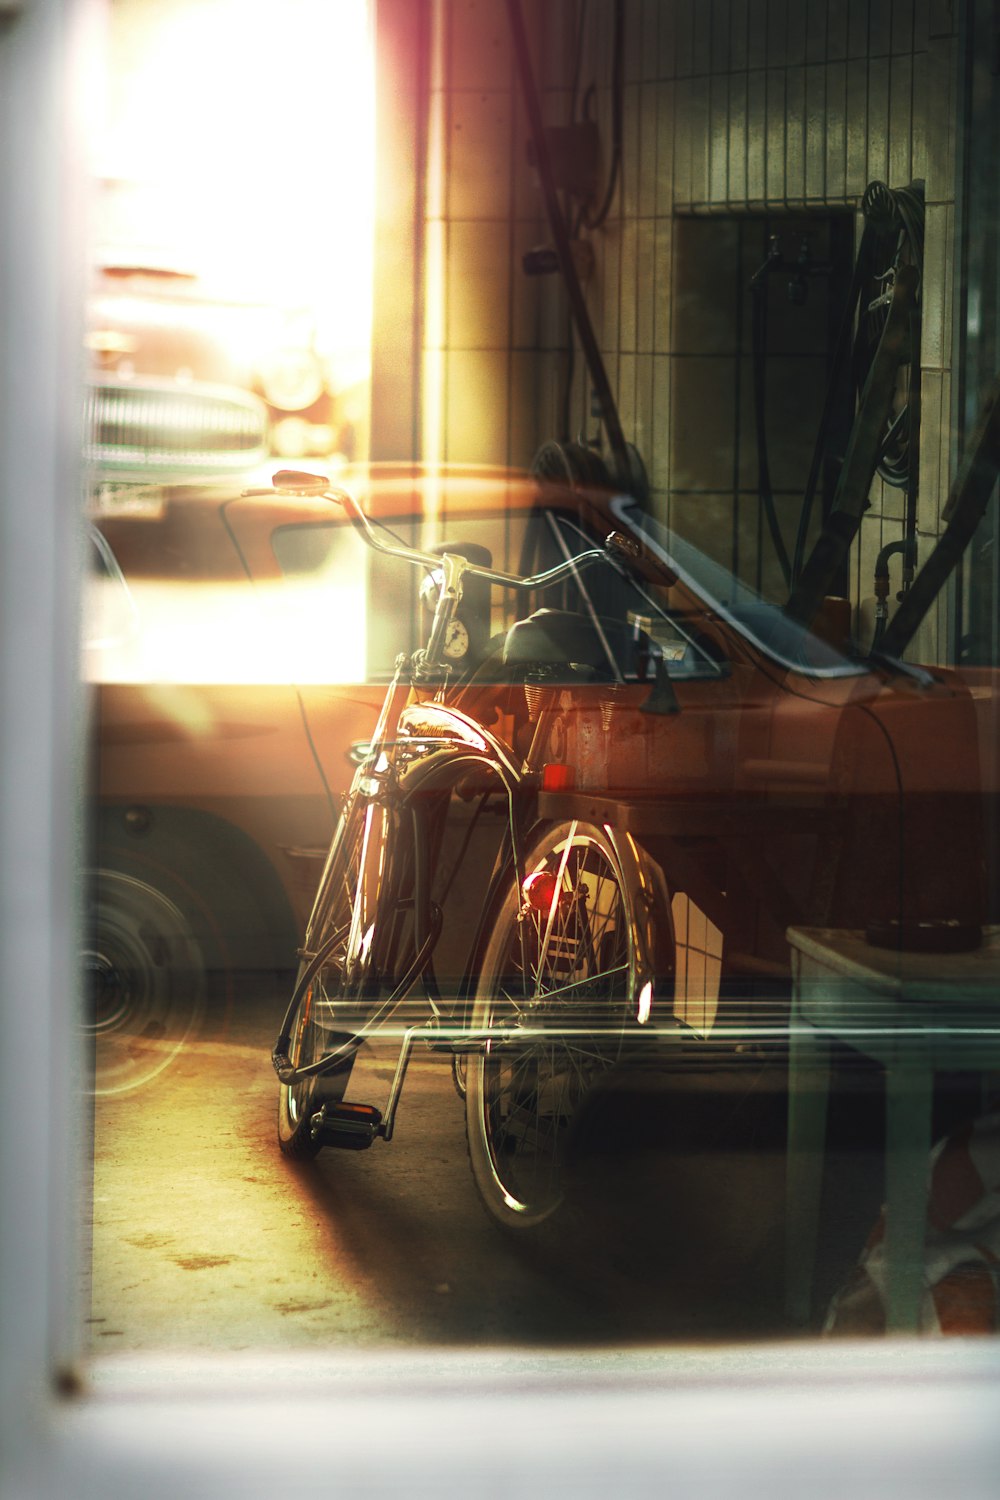 vélo de route gris et noir garé à côté d’un mur surveillant une fenêtre en verre